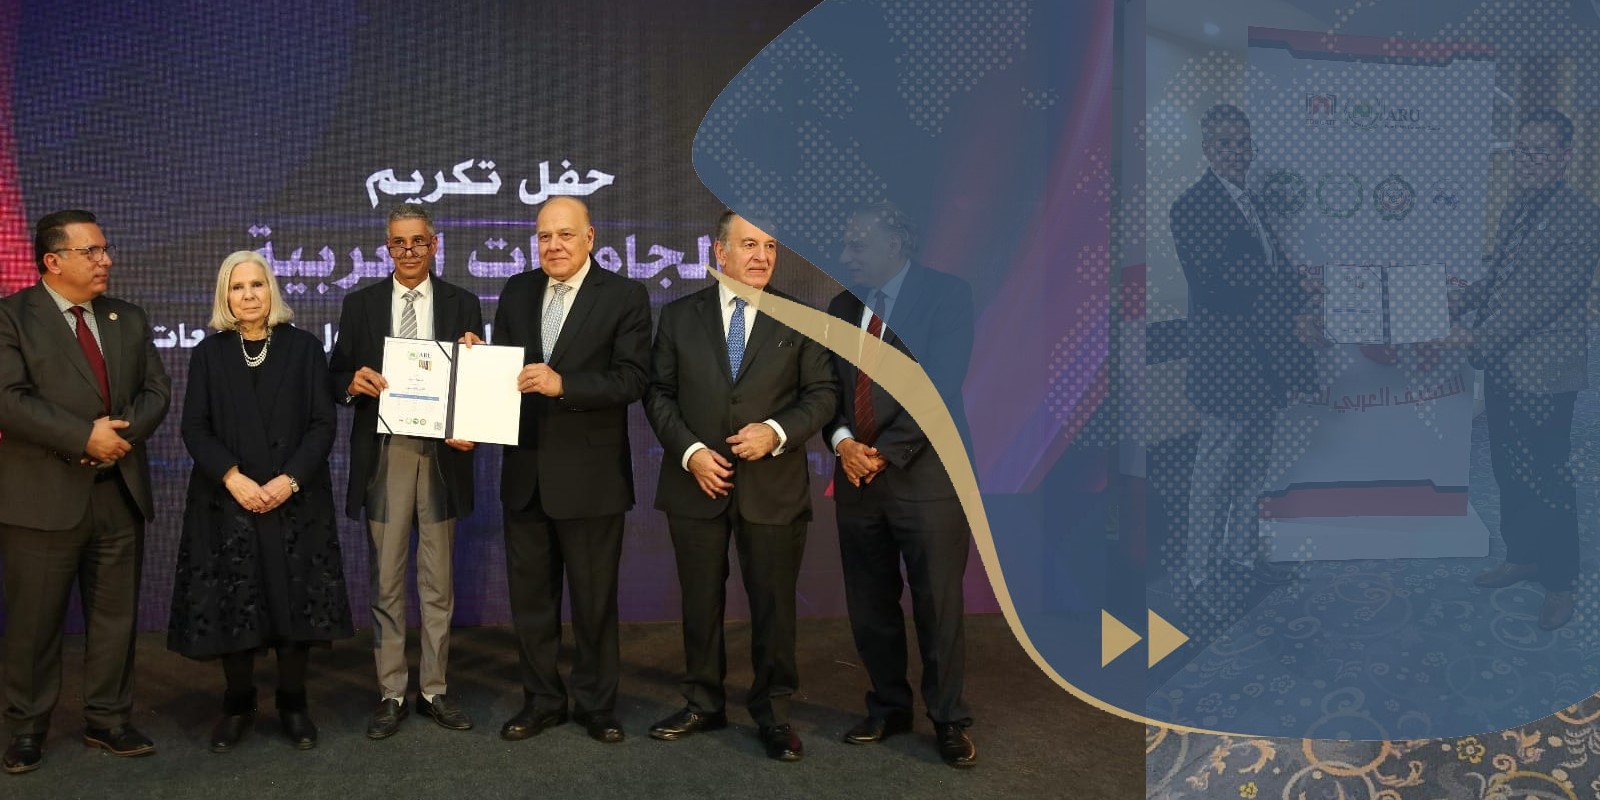 تكريم جامعة سرت بعد حصولها على المركز 52 بالتصنيف العربي والثاني محليا